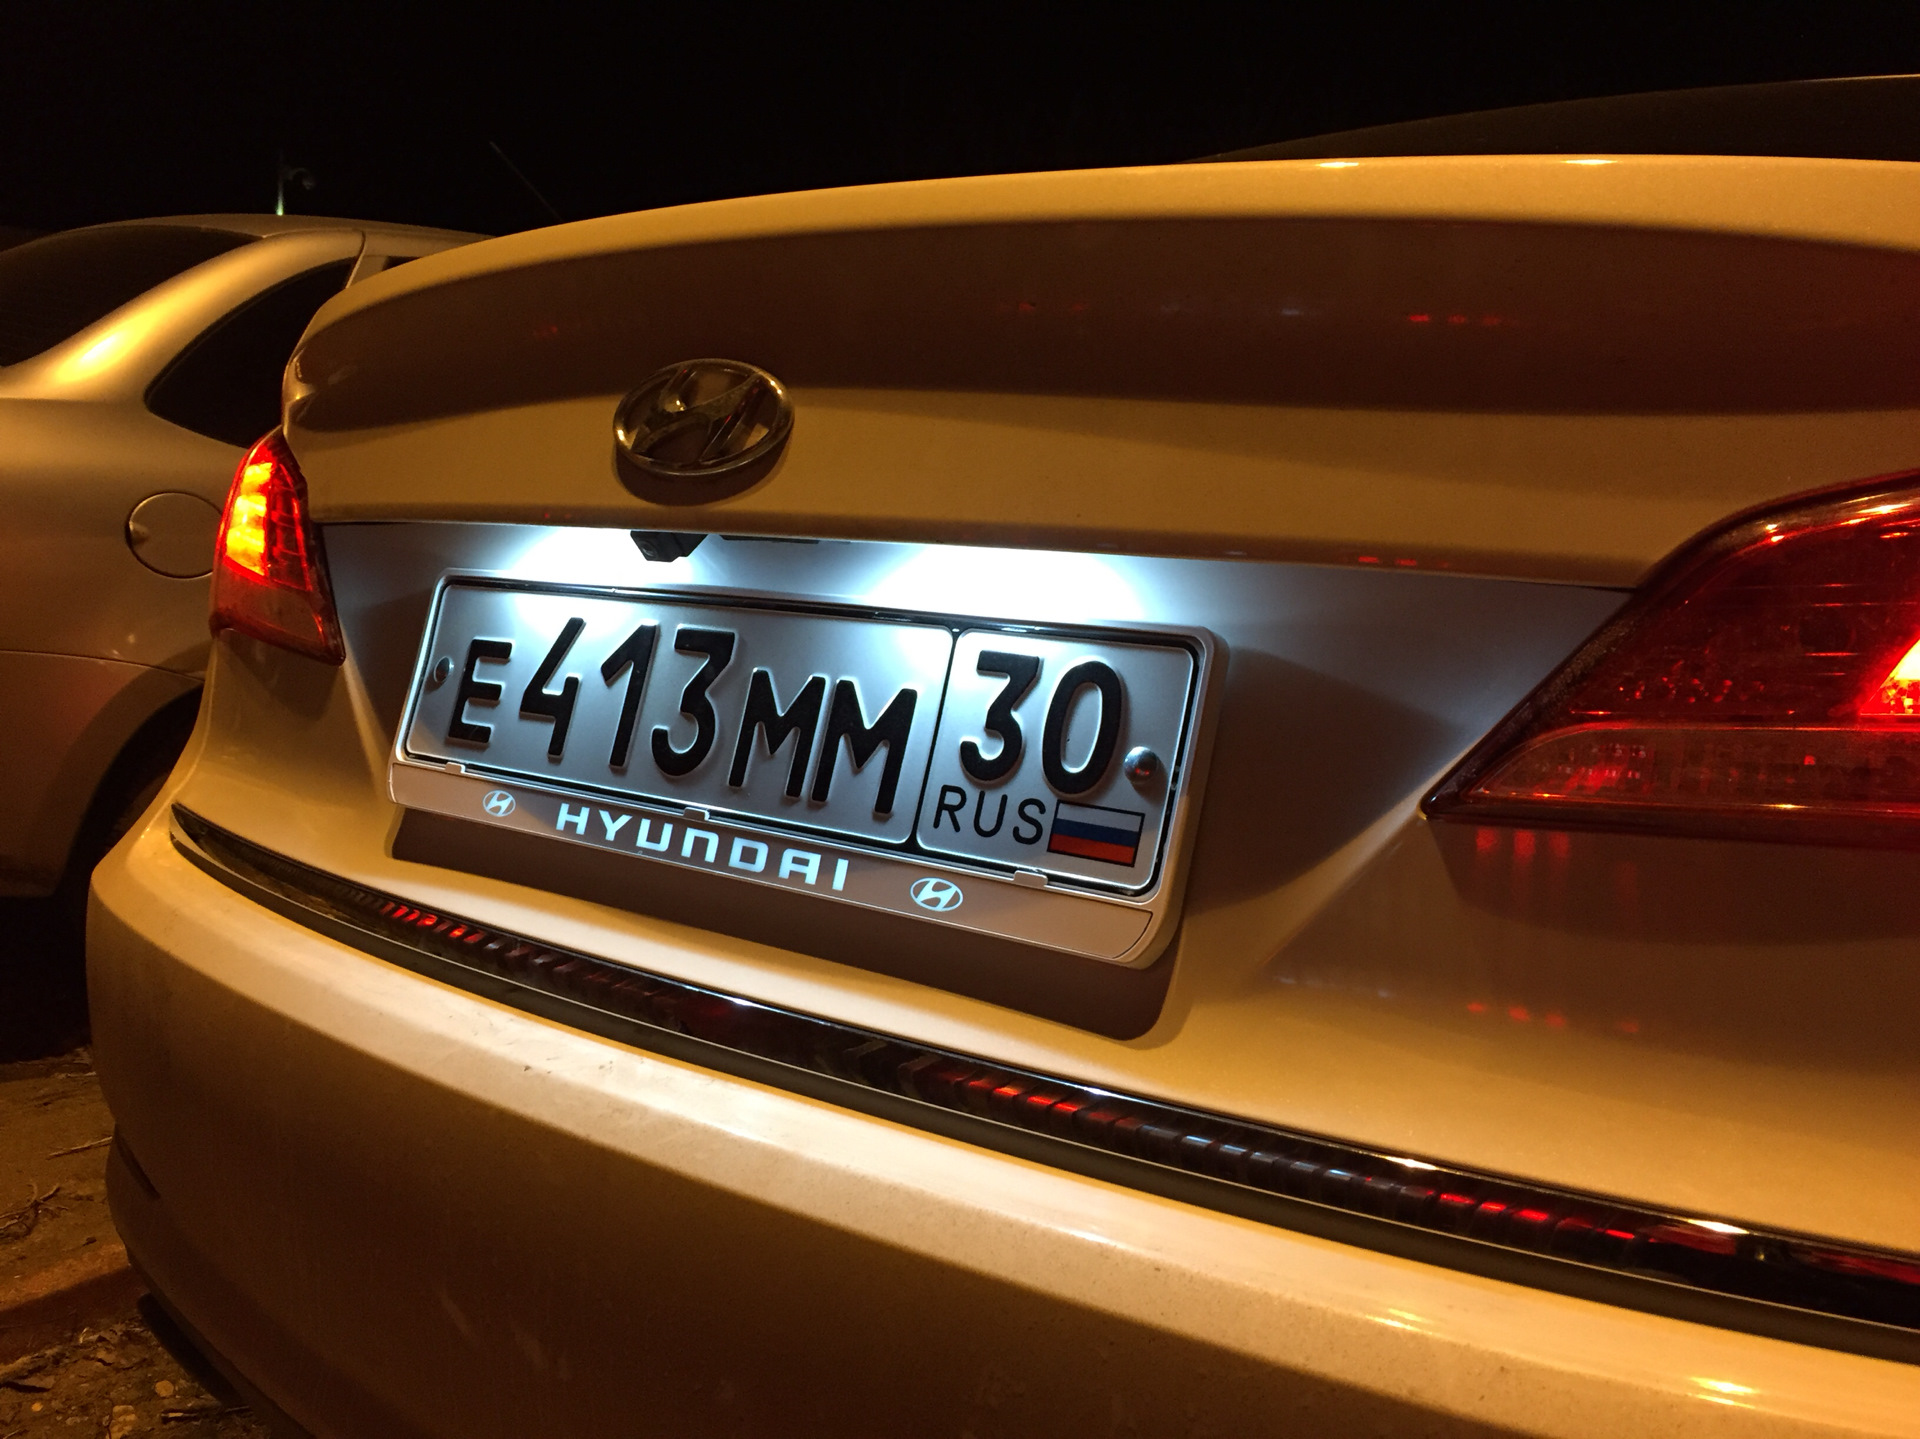 Рамка для автомобиля с подсветкой. Номерные рамки Hyundai. Номерная рамка для Хендай Hyundai Солярис. Hyundai рамка номерного знака. Лампочки номерного знака на Hyundai i40.